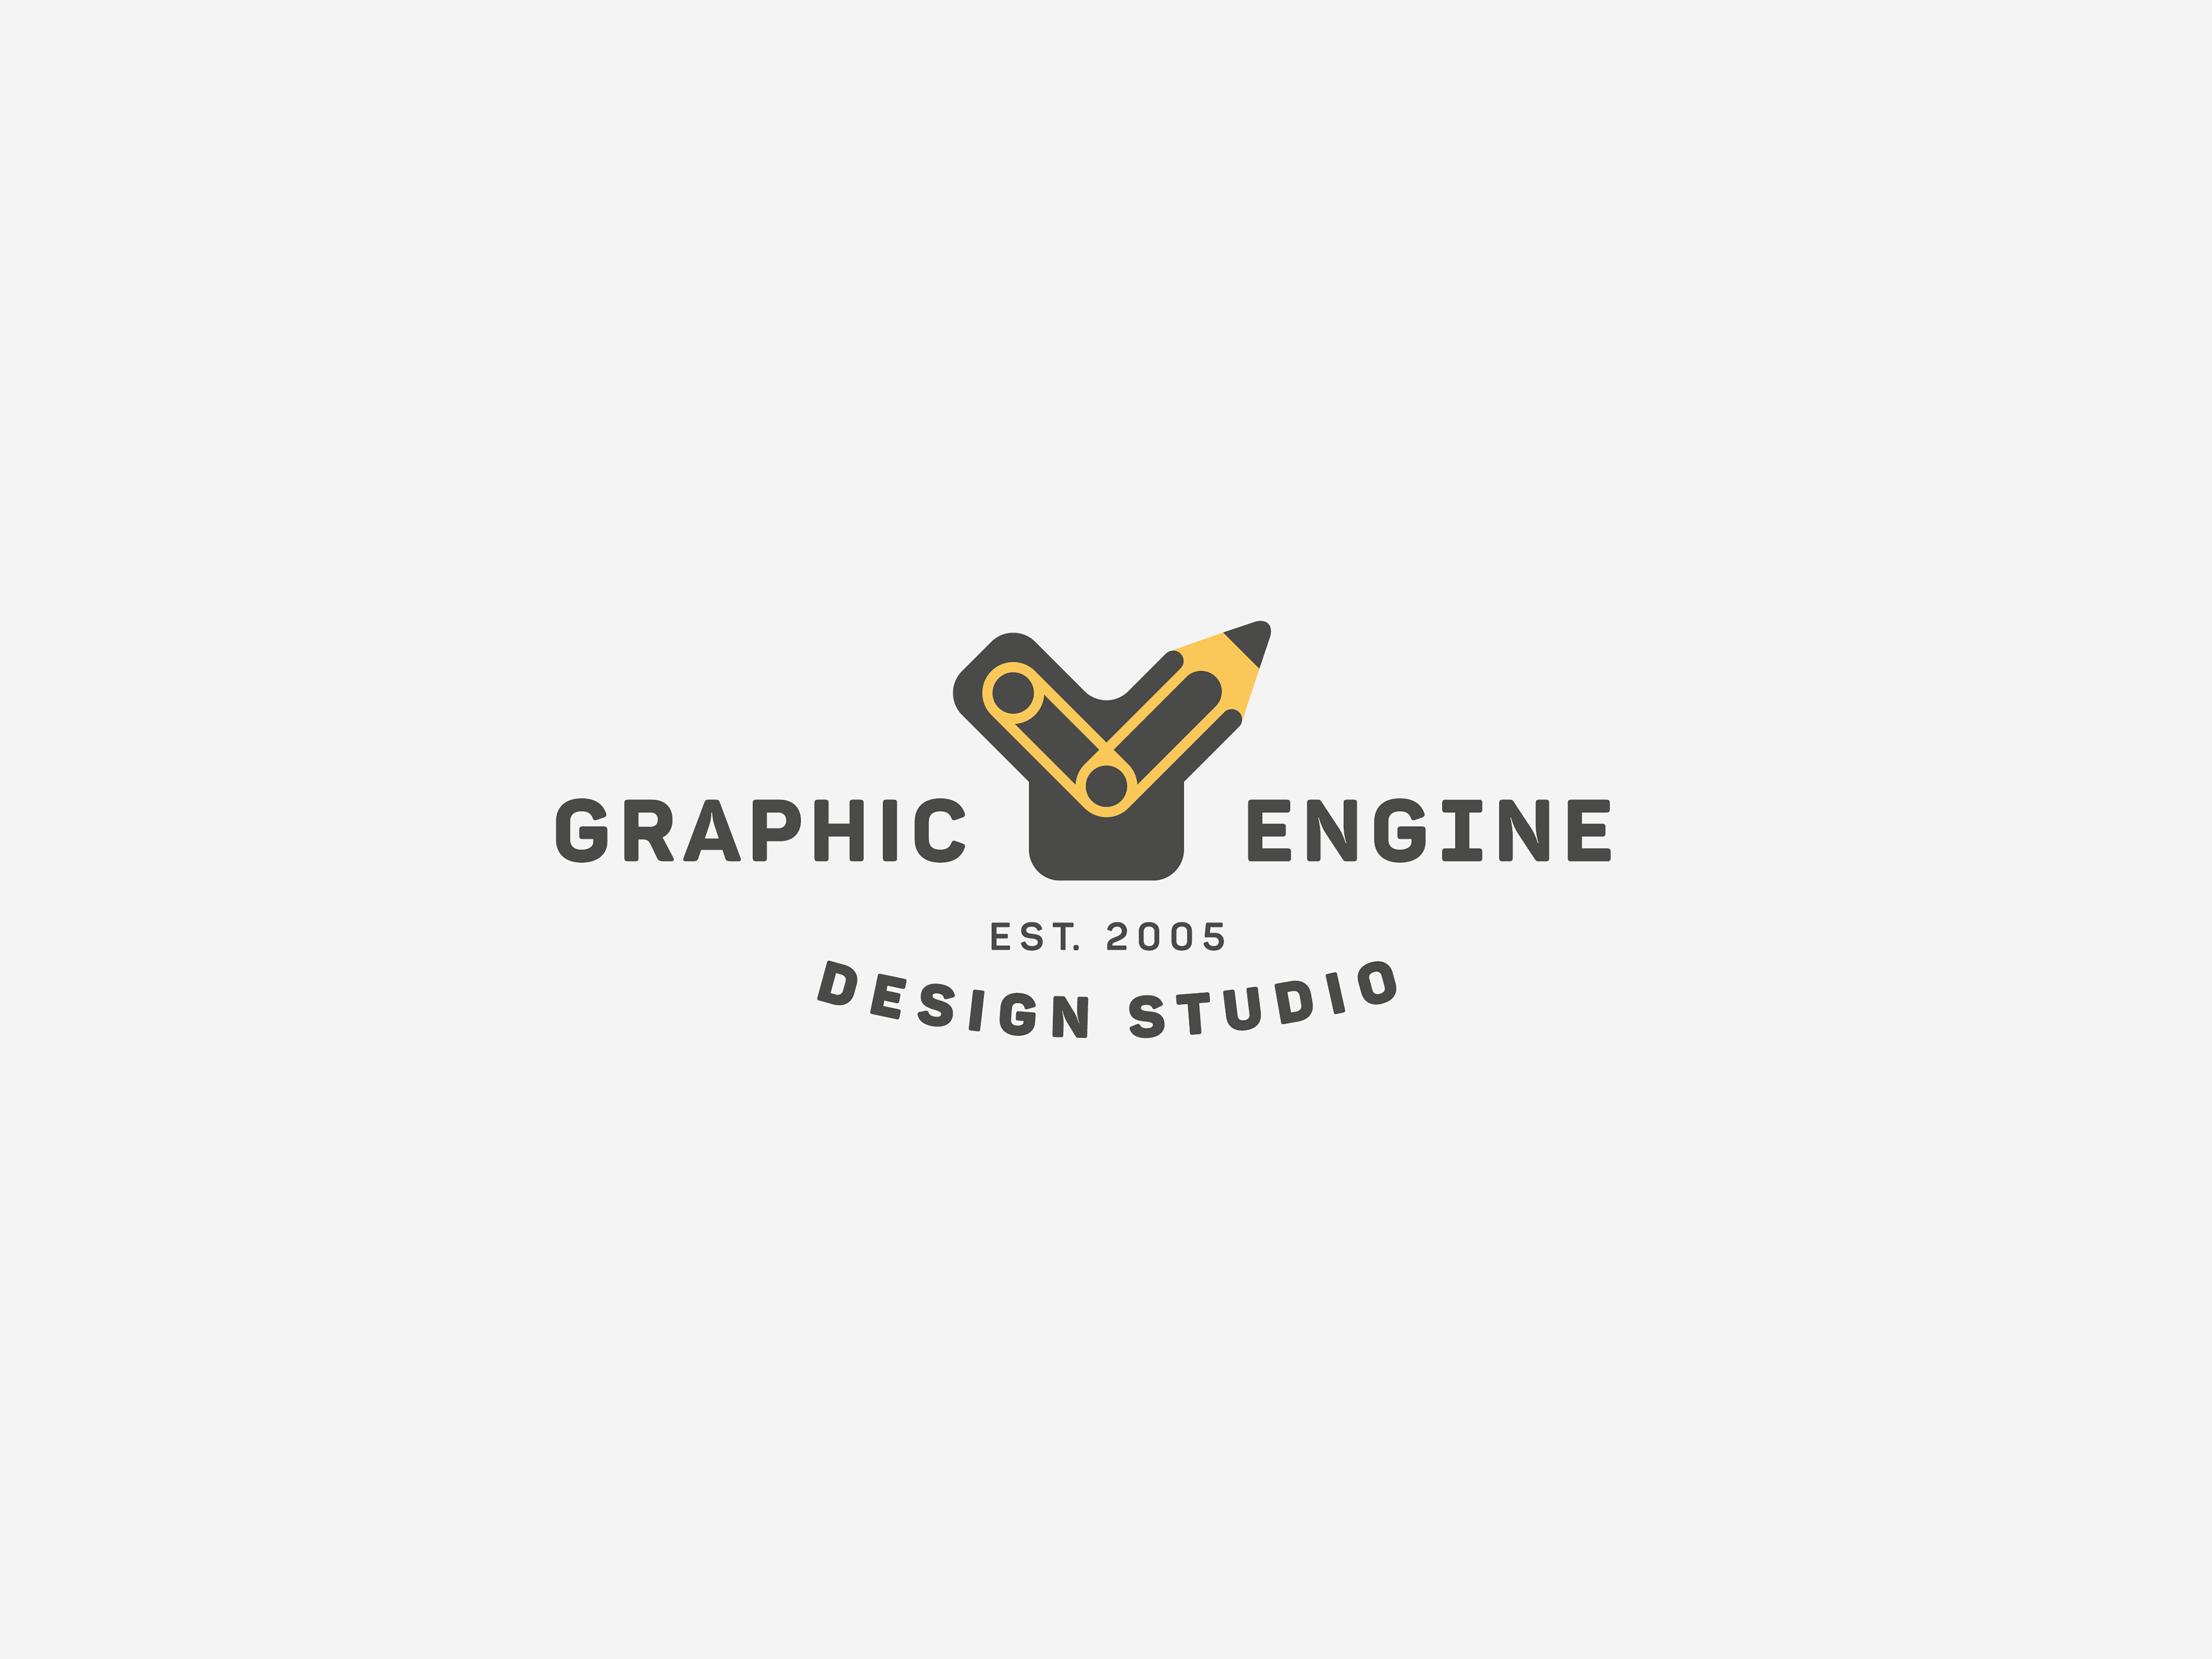 Graphic Engine Design Studio